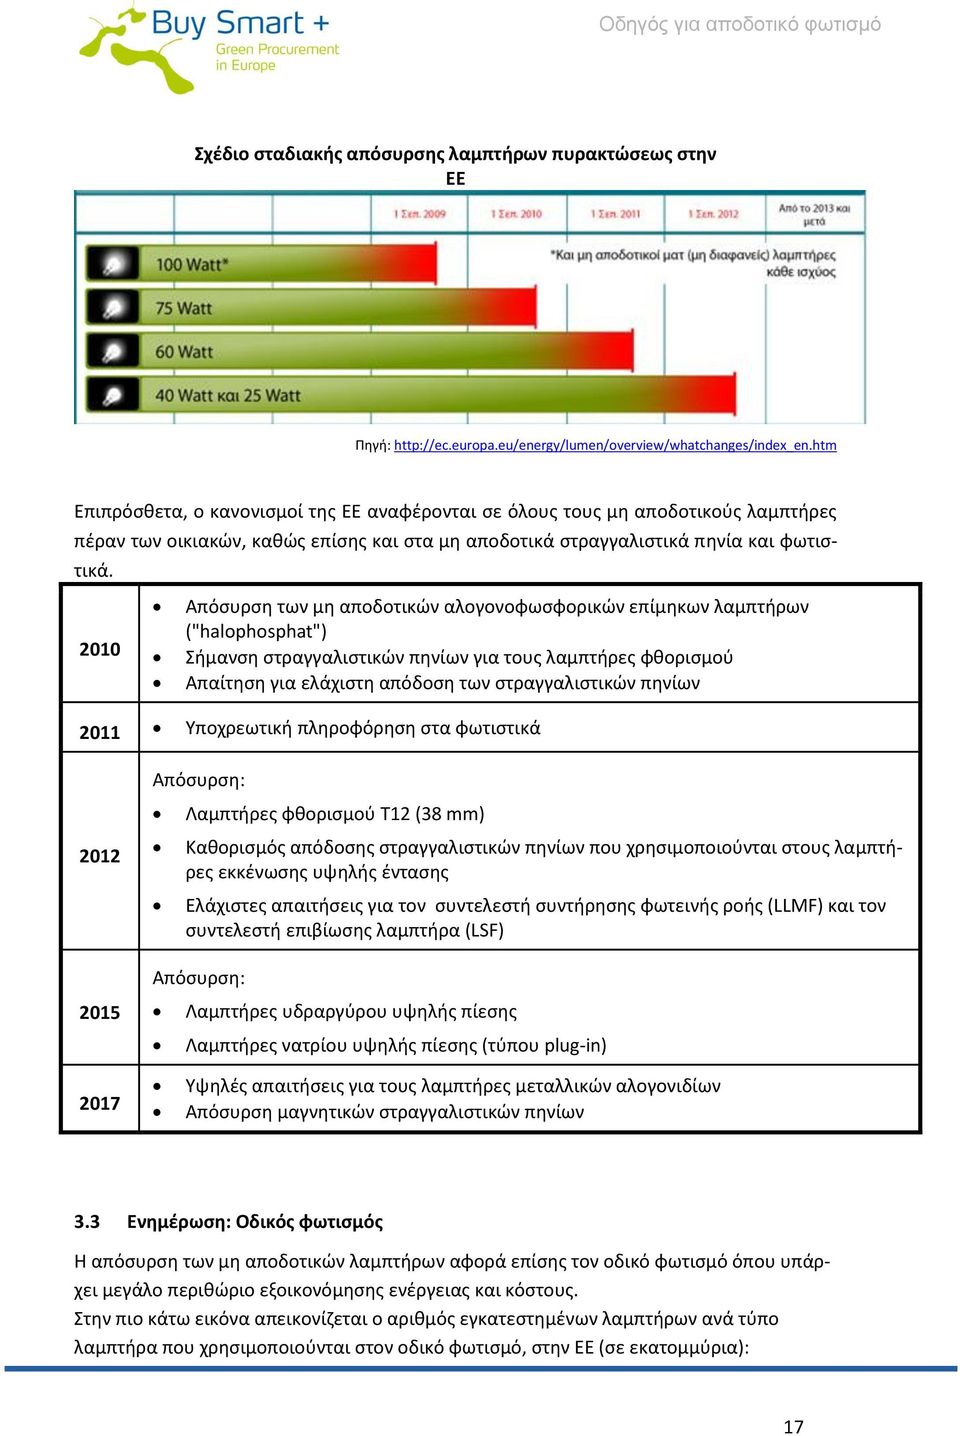 Απόσυρση των μη αποδοτικών αλογονοφωσφορικών επίμηκων λαμπτήρων 2010 ("halophosphat") Σήμανση στραγγαλιστικών πηνίων για τους λαμπτήρες φθορισμού Απαίτηση για ελάχιστη απόδοση των στραγγαλιστικών